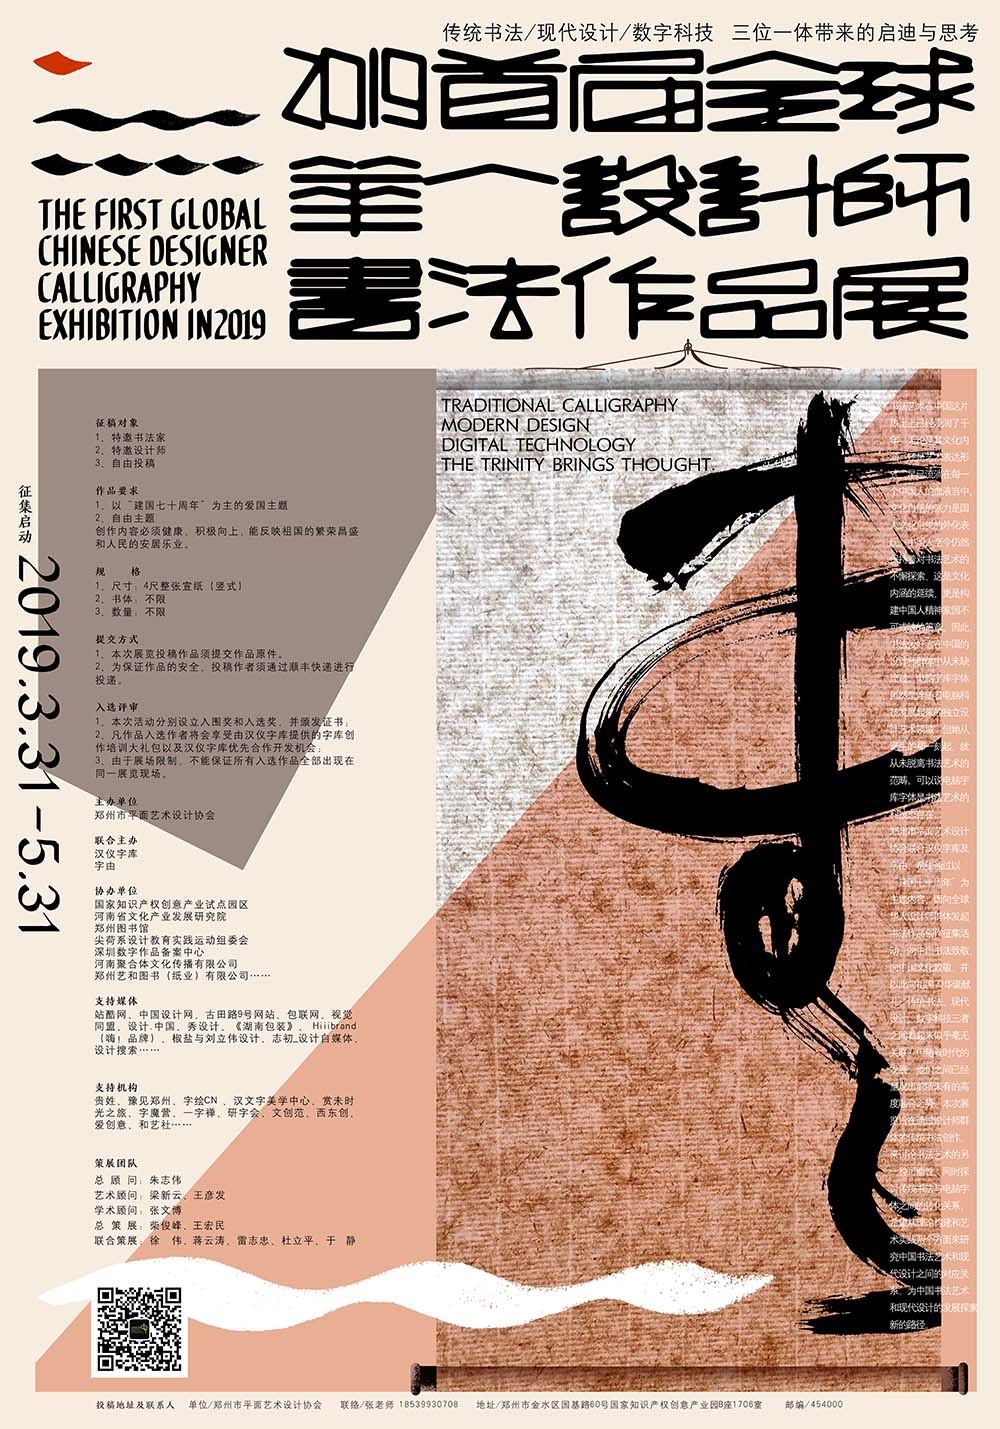 首届全球华人设计师书法作品展征集开启.jpg